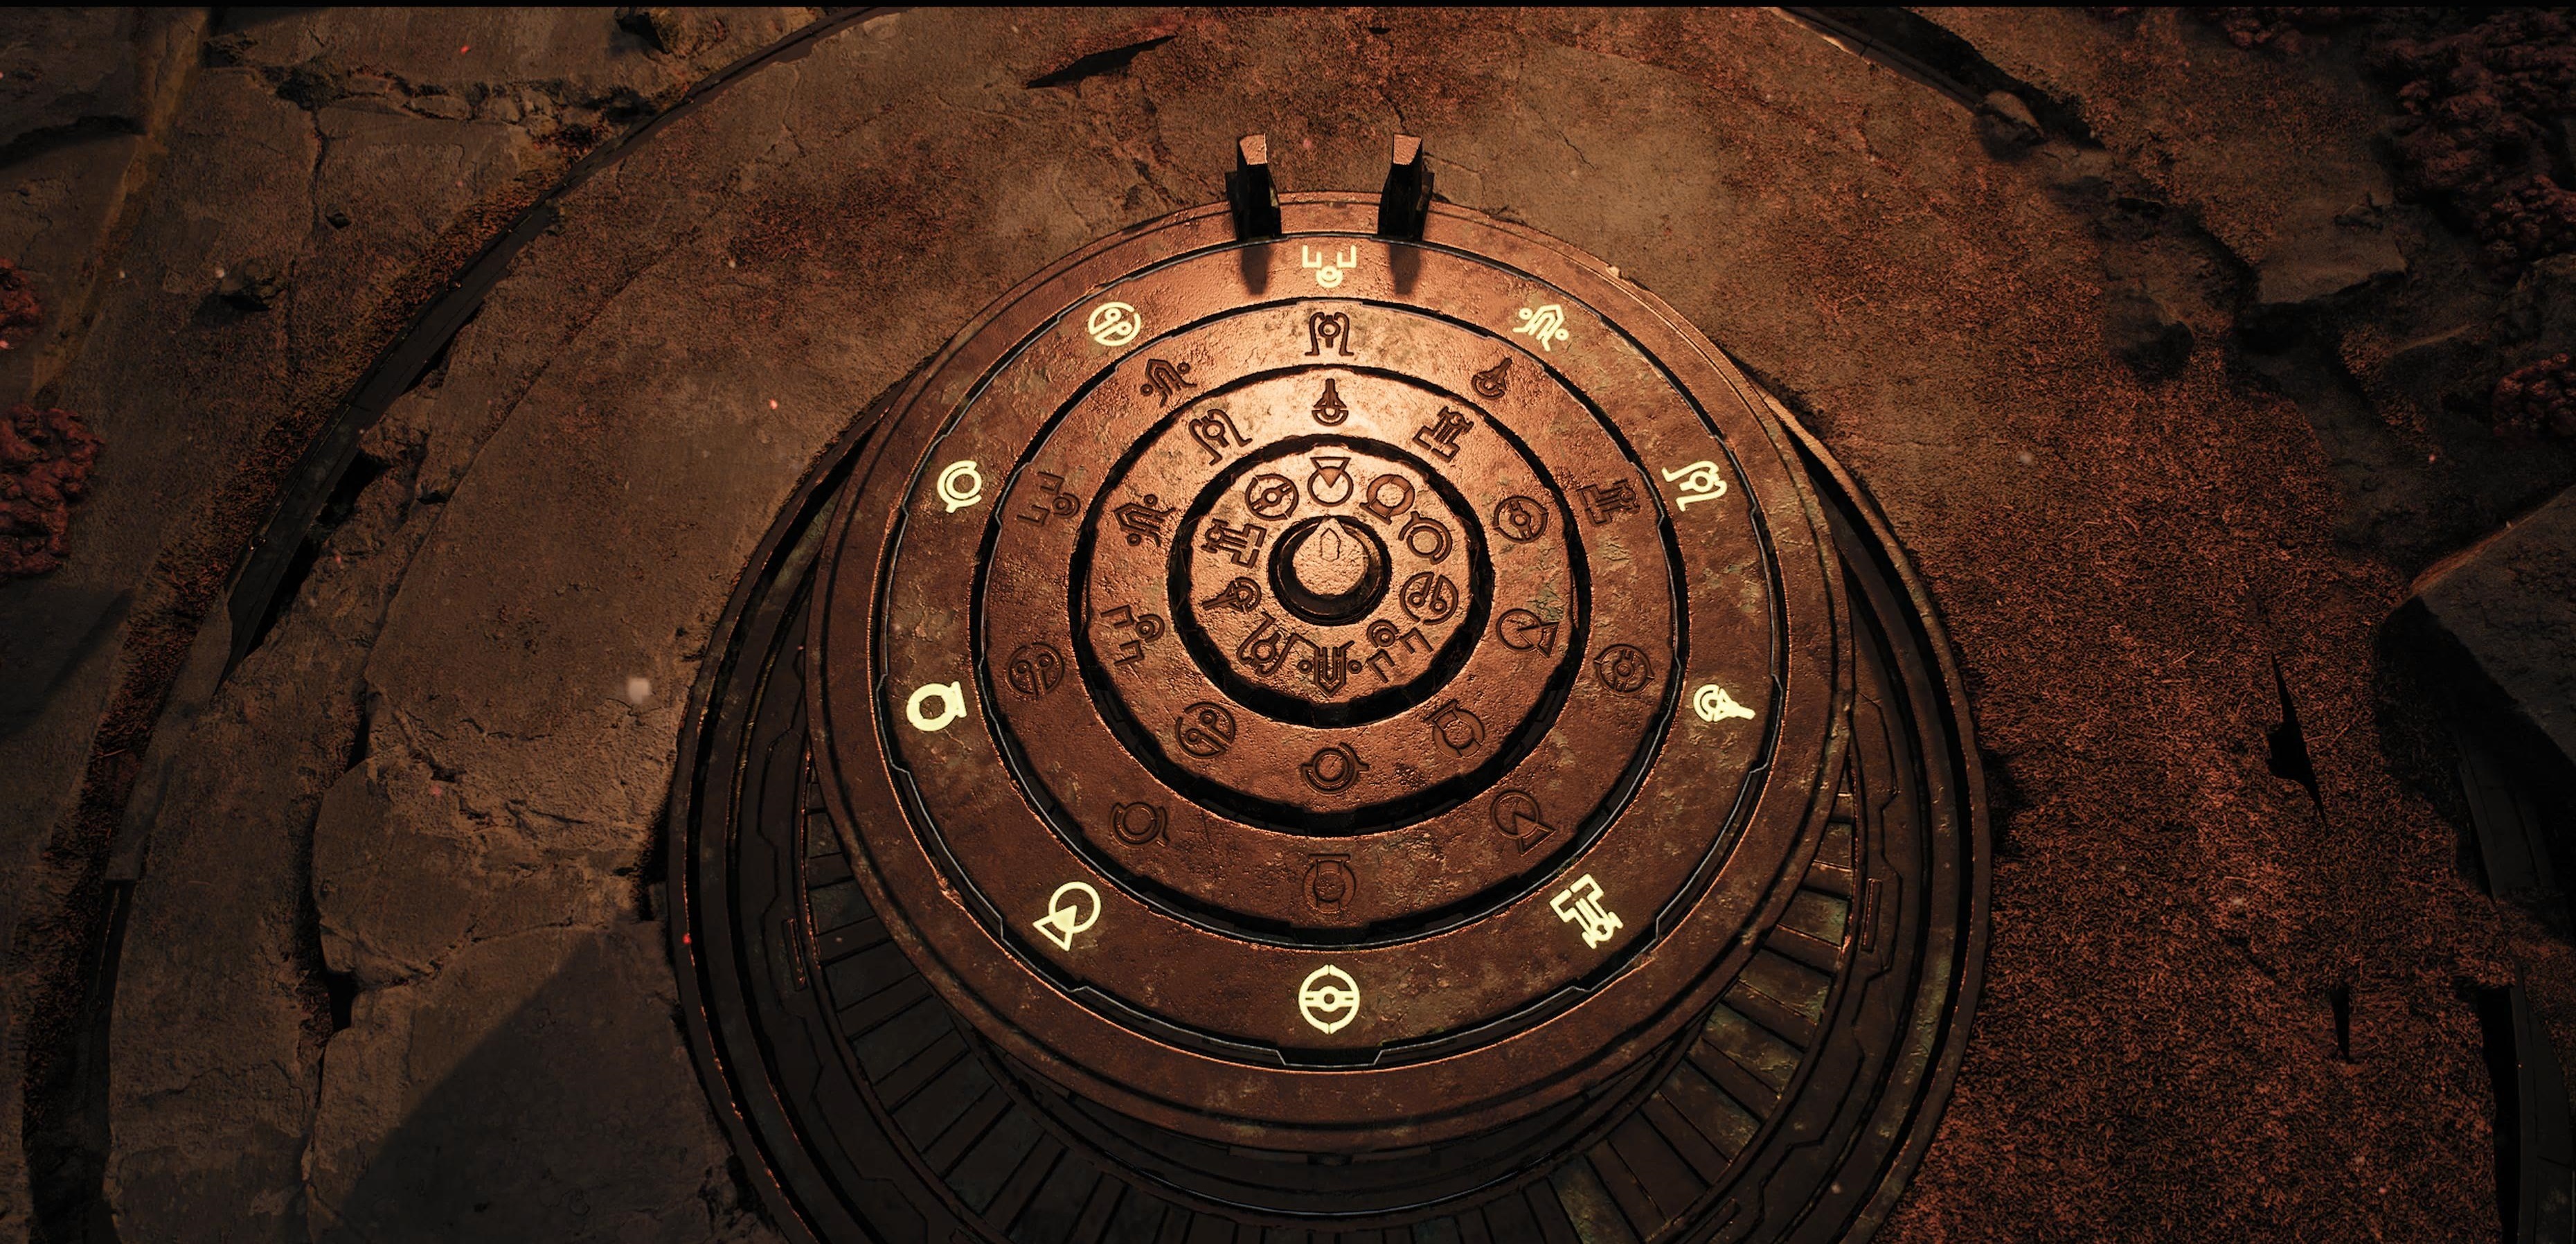 Ремнант 2 загадка с. Ремнант 2 имперские сады головоломка. Baldur's Gate 3 головоломка в оскверненном храме. Лунные башни Baldur's Gate 3. Загадка с каменными дисками Baldur's Gate 3.